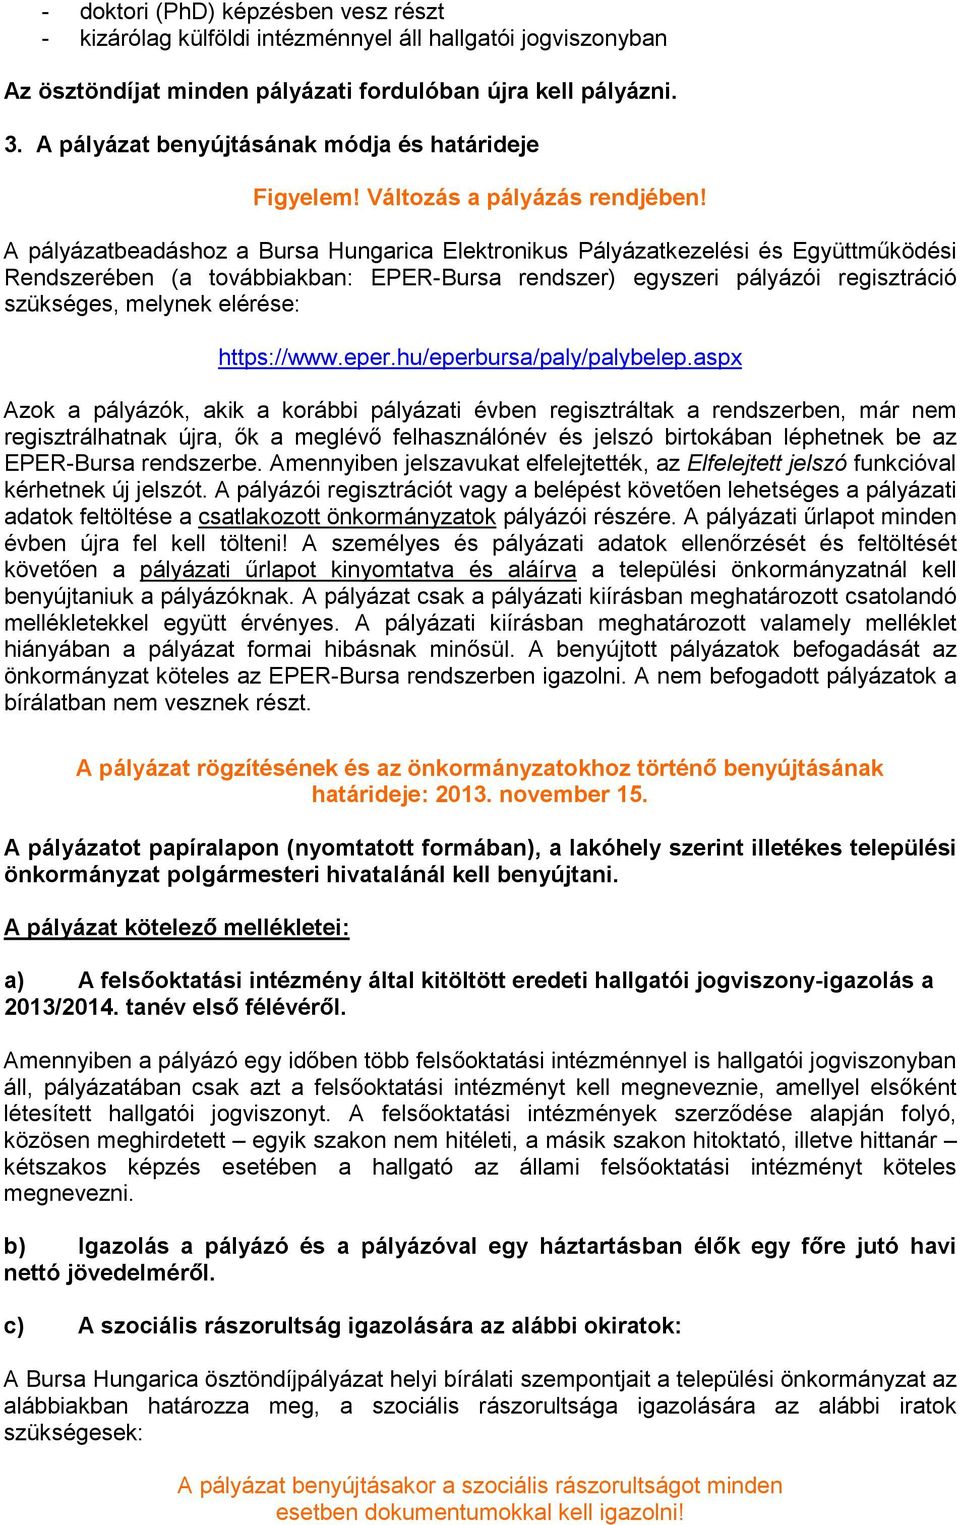 A pályázatbeadáshoz a Bursa Hungarica Elektronikus Pályázatkezelési és Együttmőködési Rendszerében (a továbbiakban: EPER-Bursa rendszer) egyszeri pályázói regisztráció szükséges, melynek elérése: